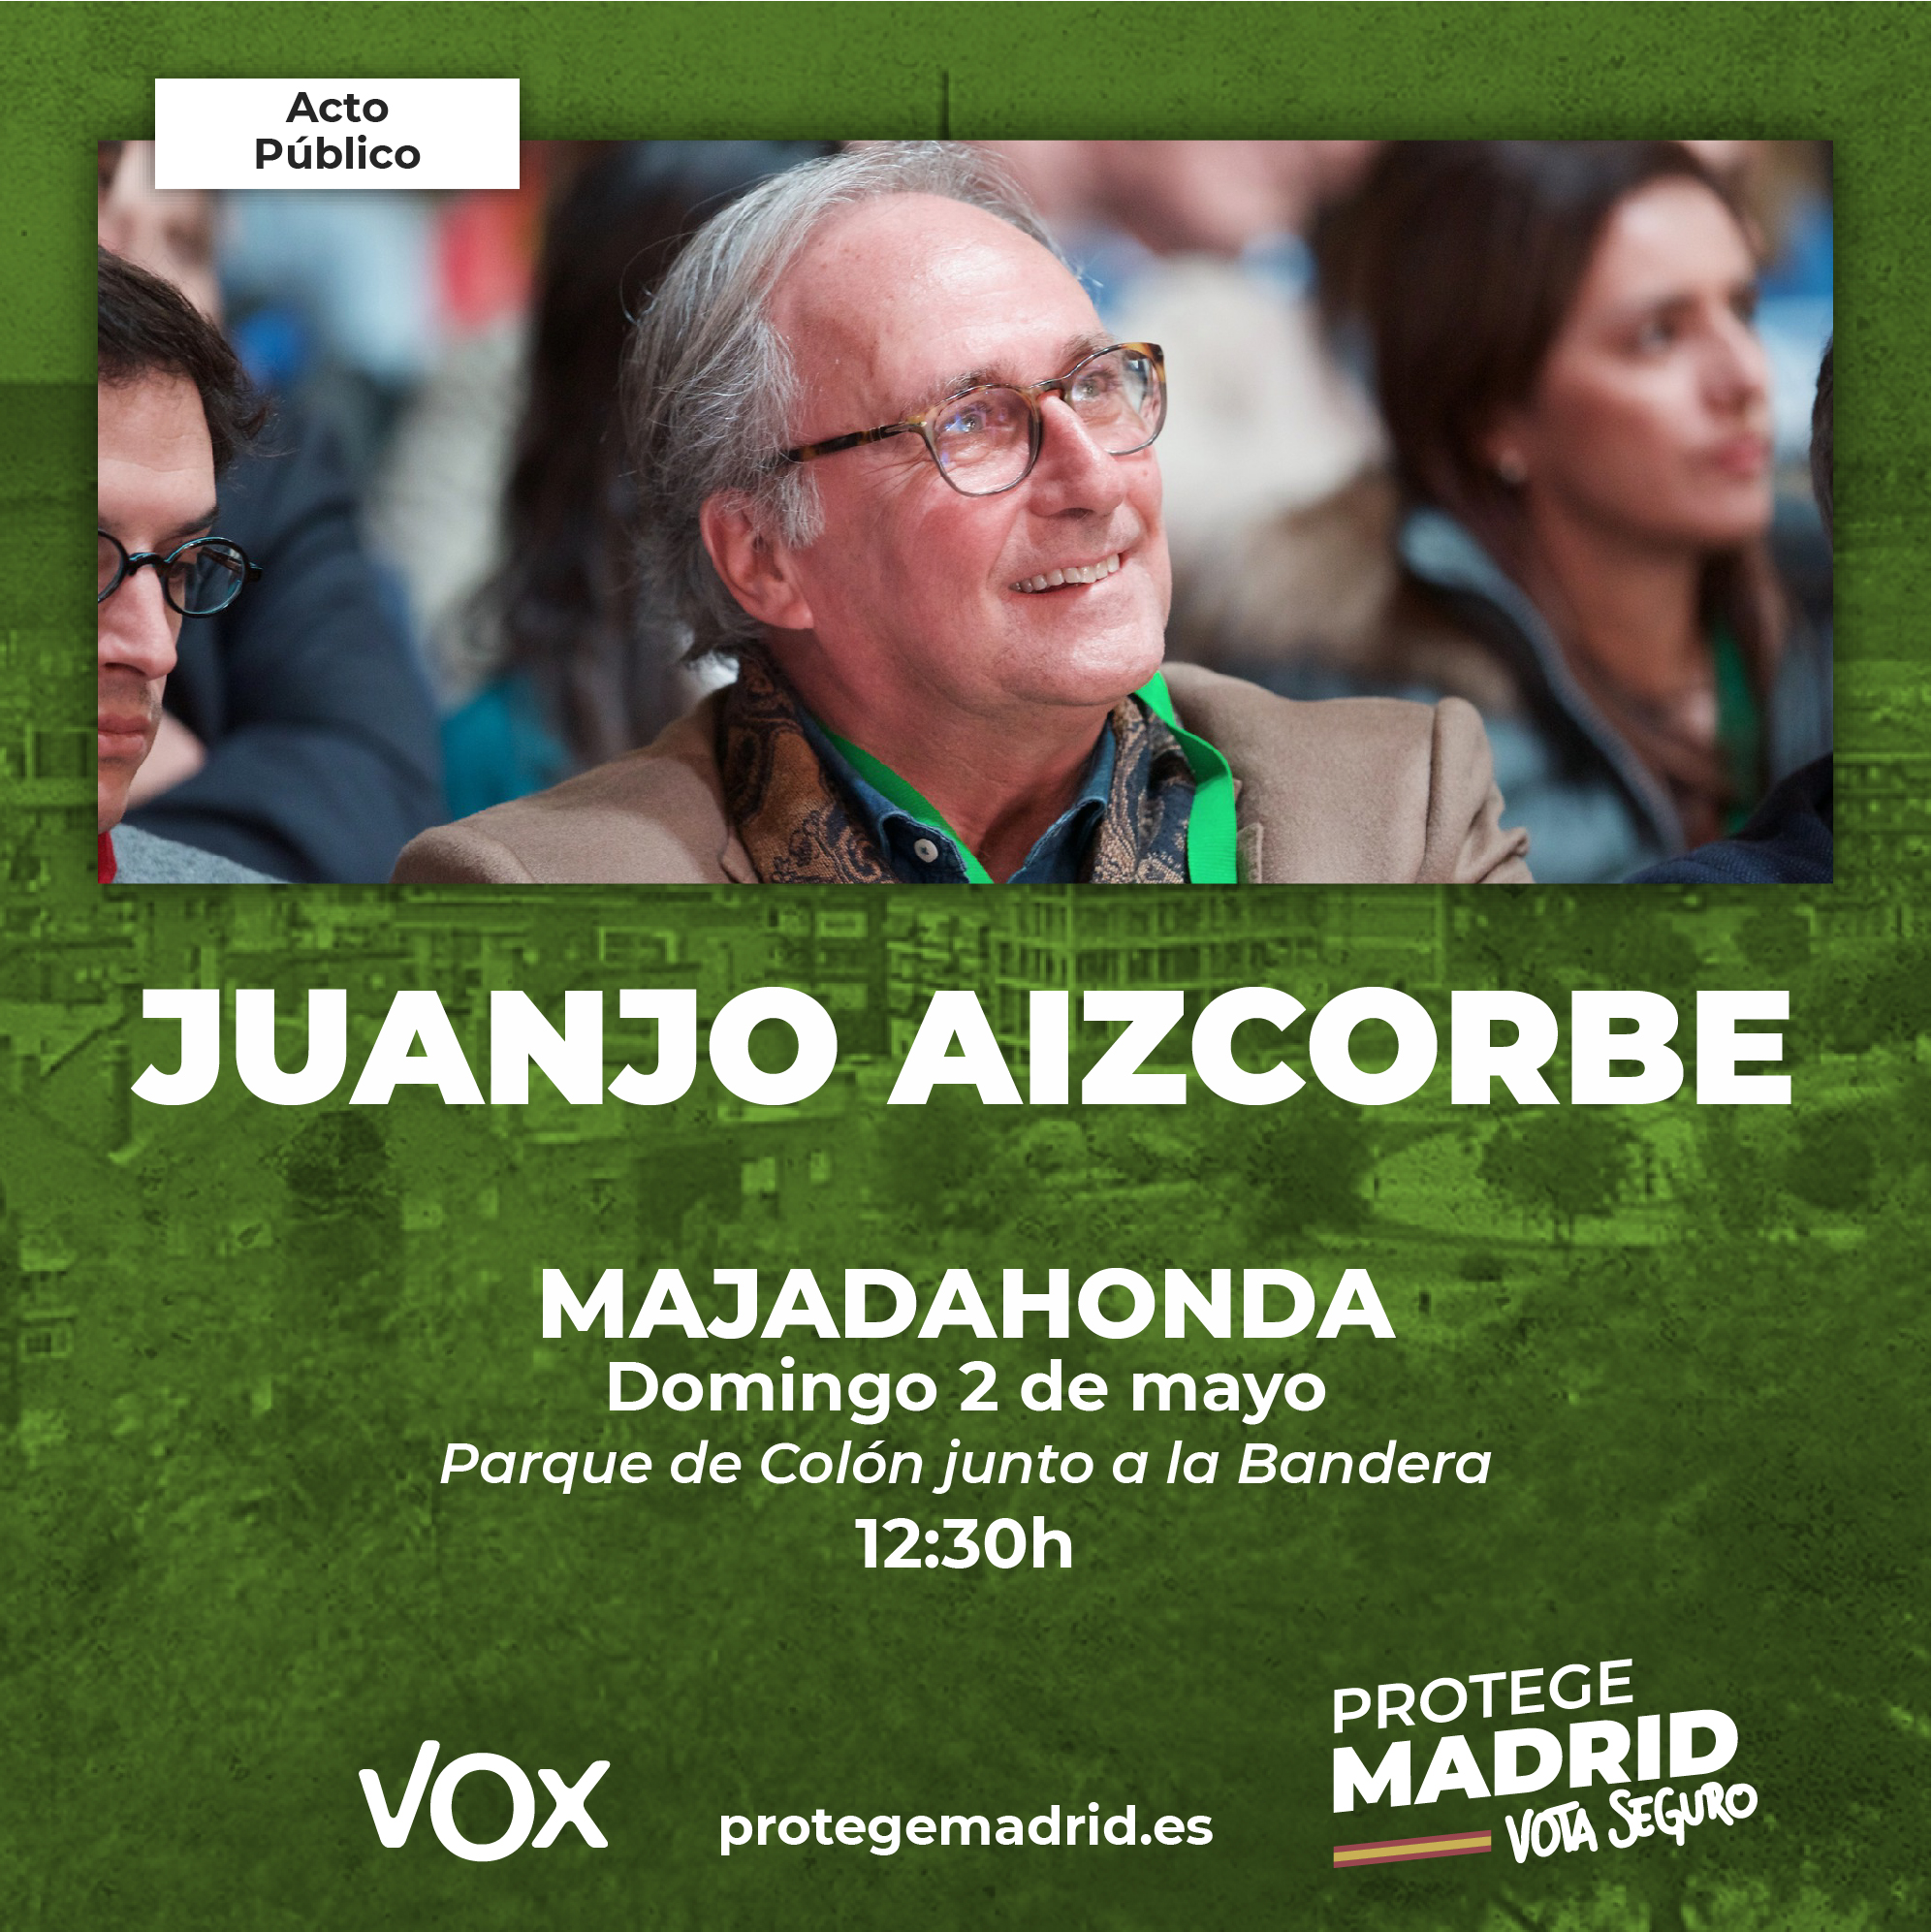 Juanjo Aizcorbe estará en Majadahonda